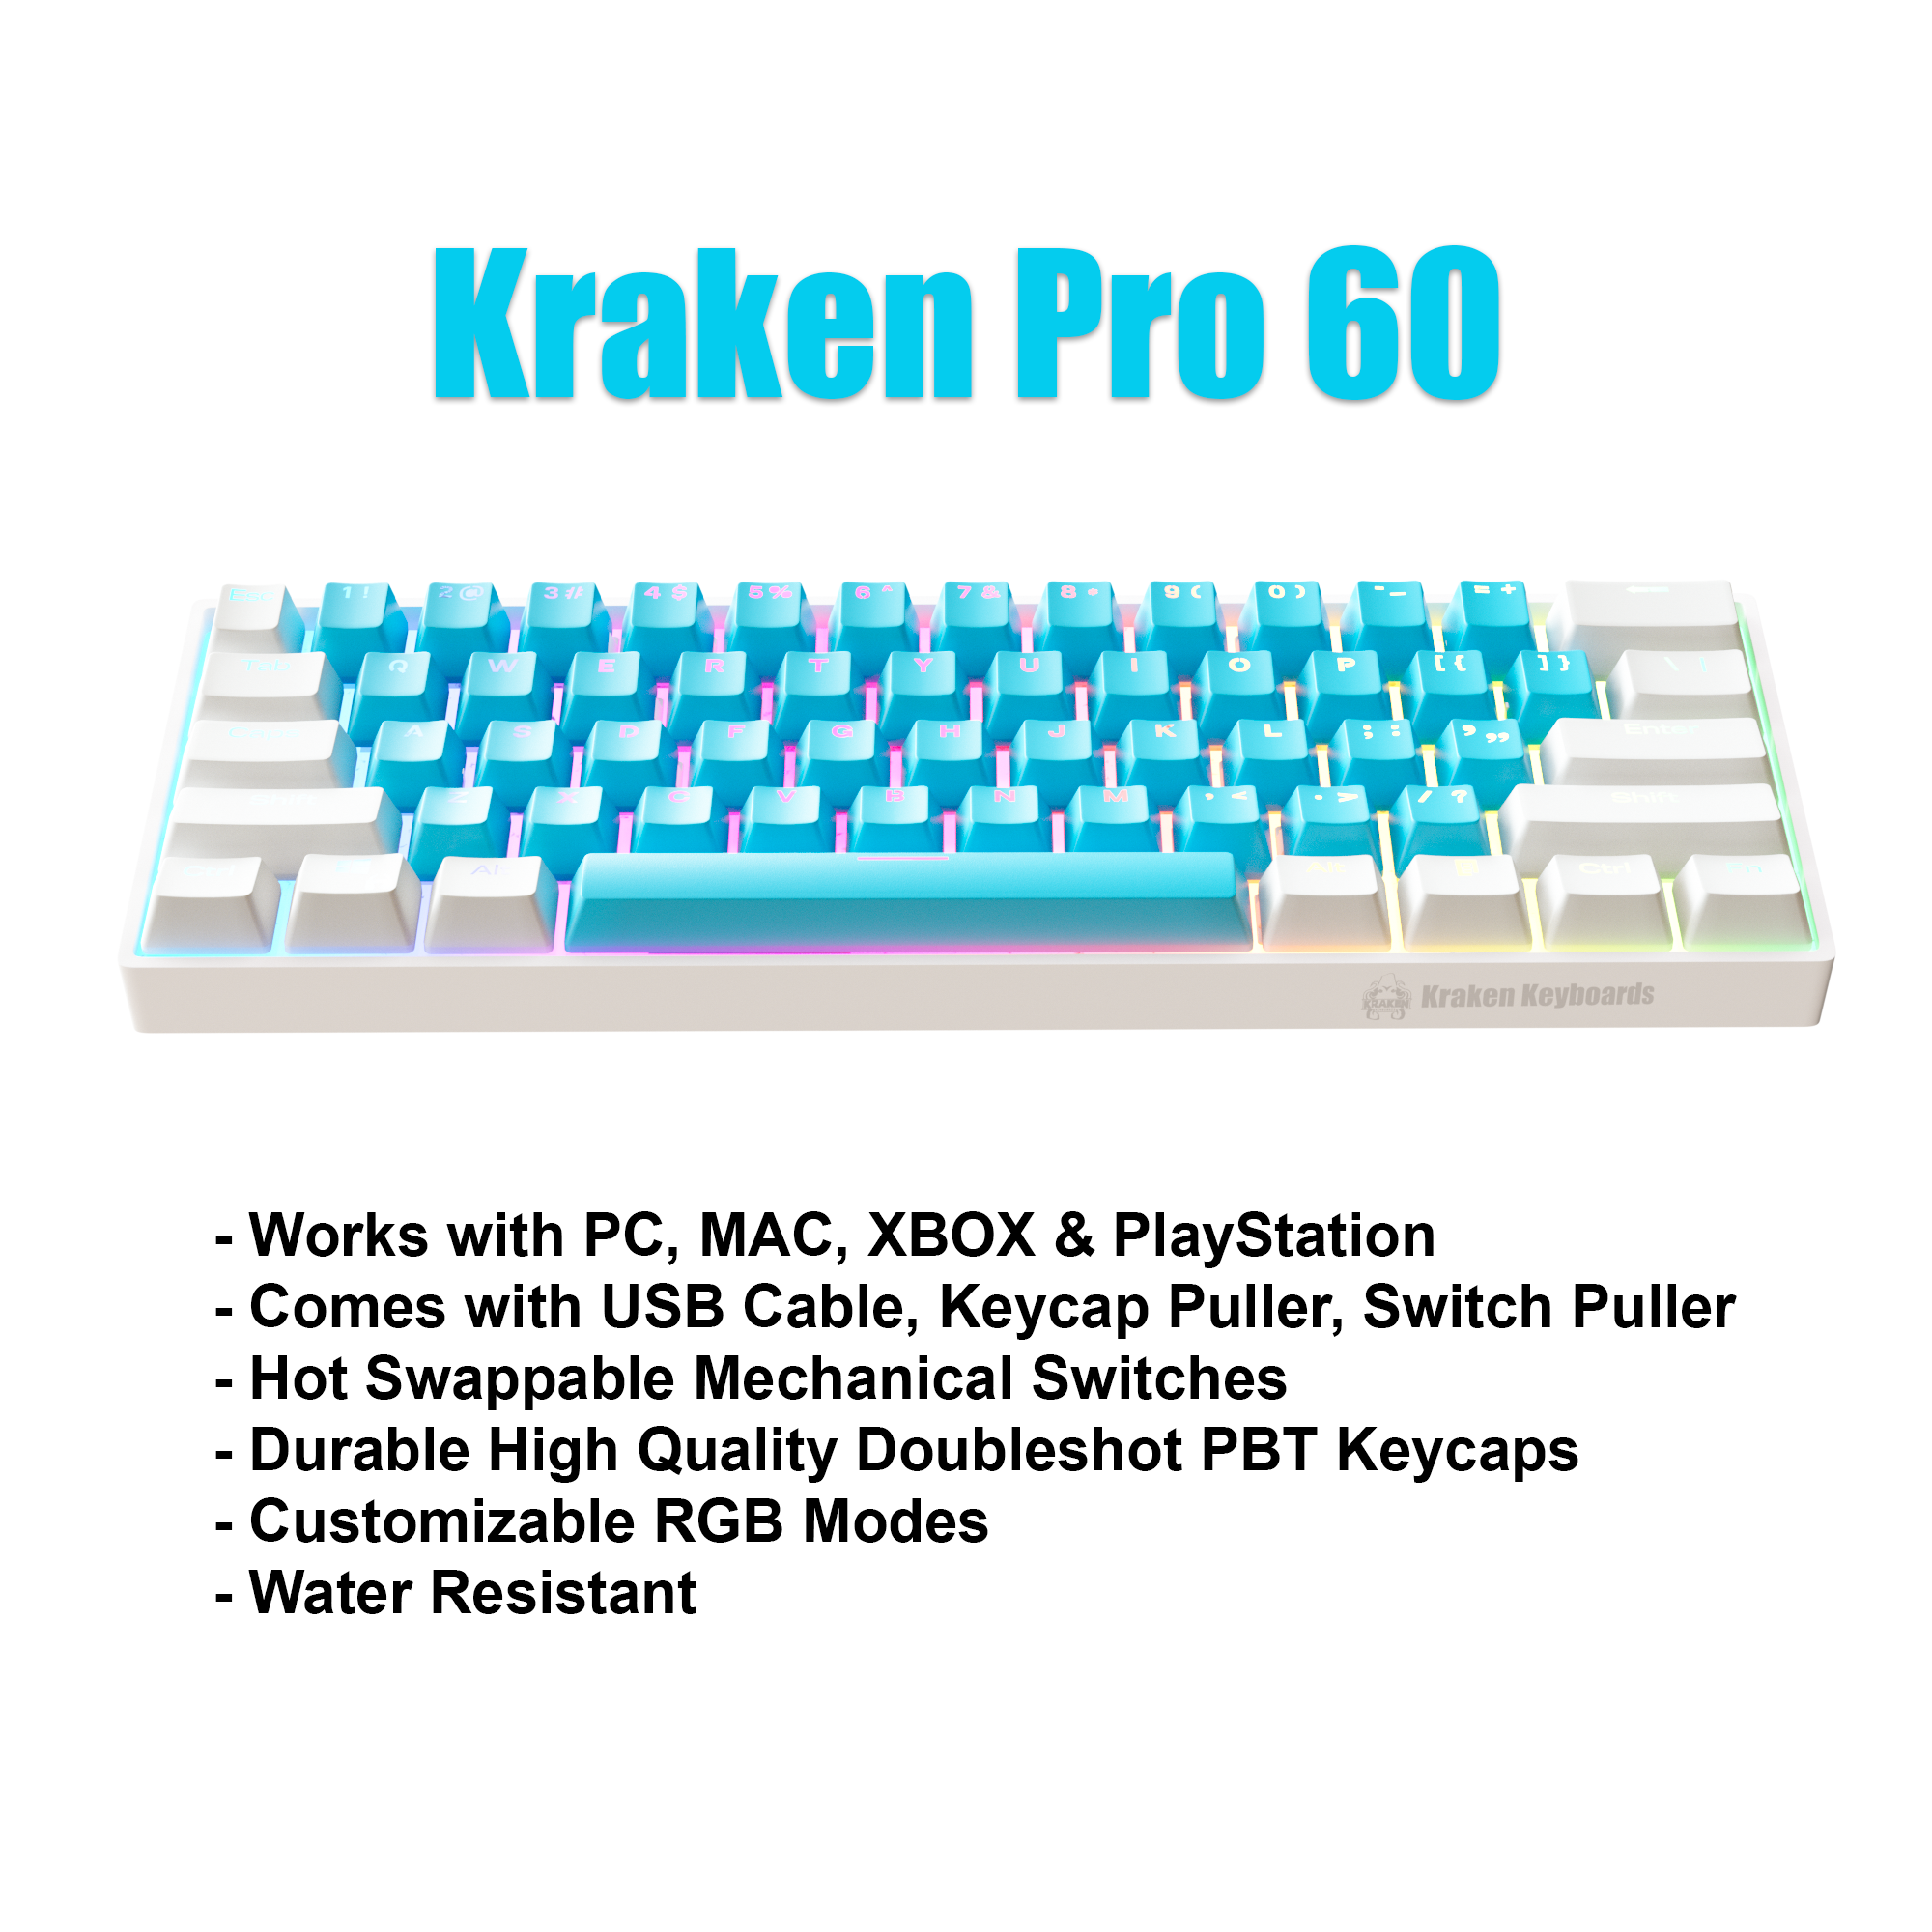  KRAKEN KEYBOARDS Sakura Edition Kraken Pro 60, White & Pink 60%  HOT SWAPPABLE Mechanical Gaming Keyboard for Gaming On PC, MAC, Xbox and  Playstation (Sakura